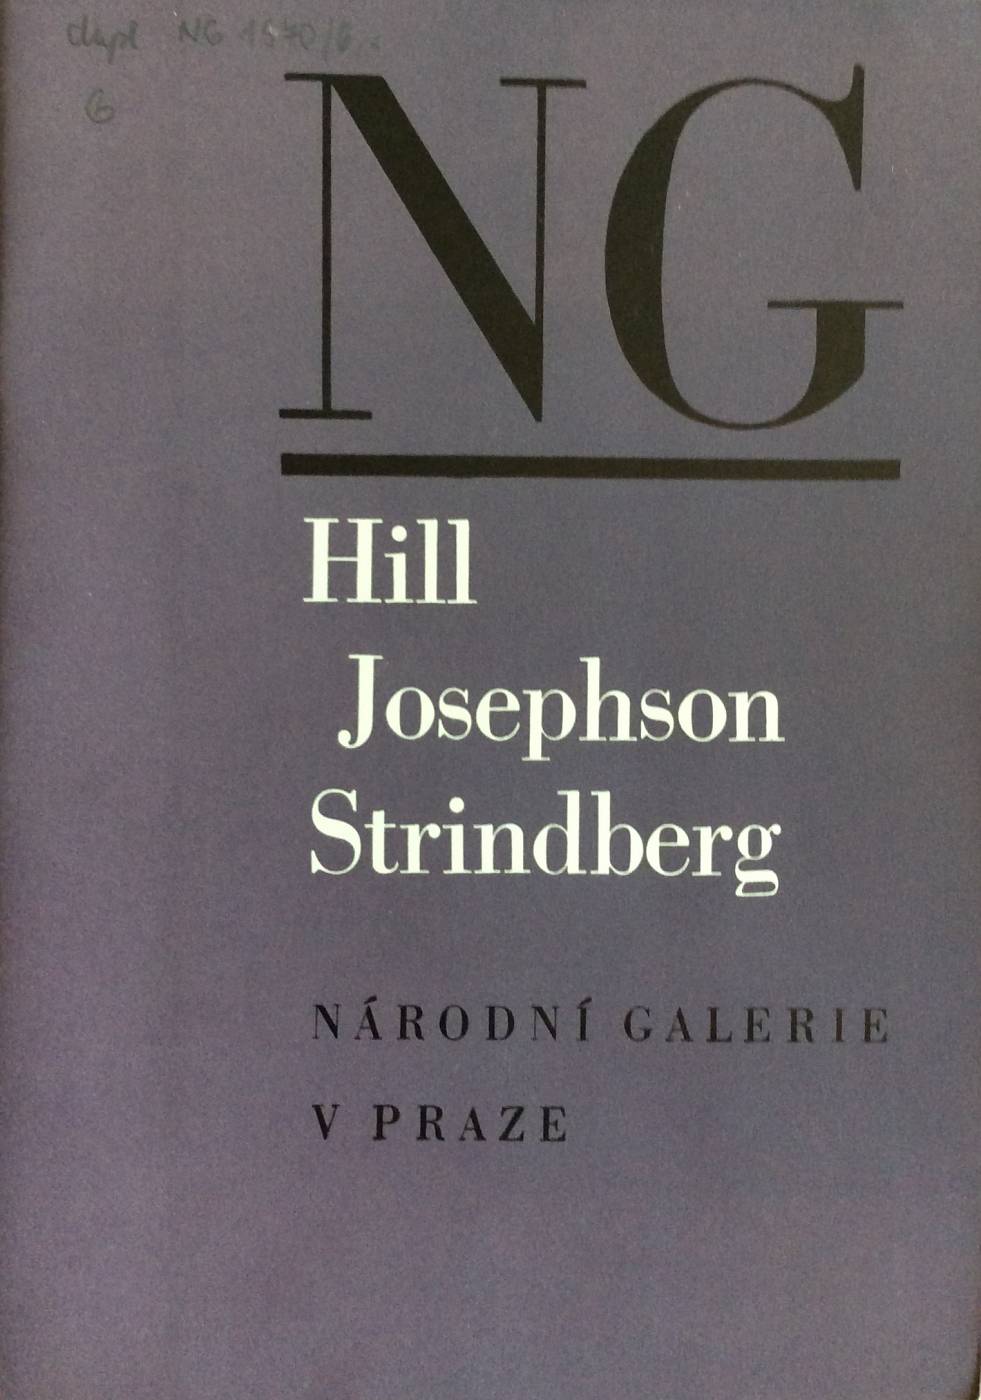 Carl Hill / Ernst Josephson / August Strindberg